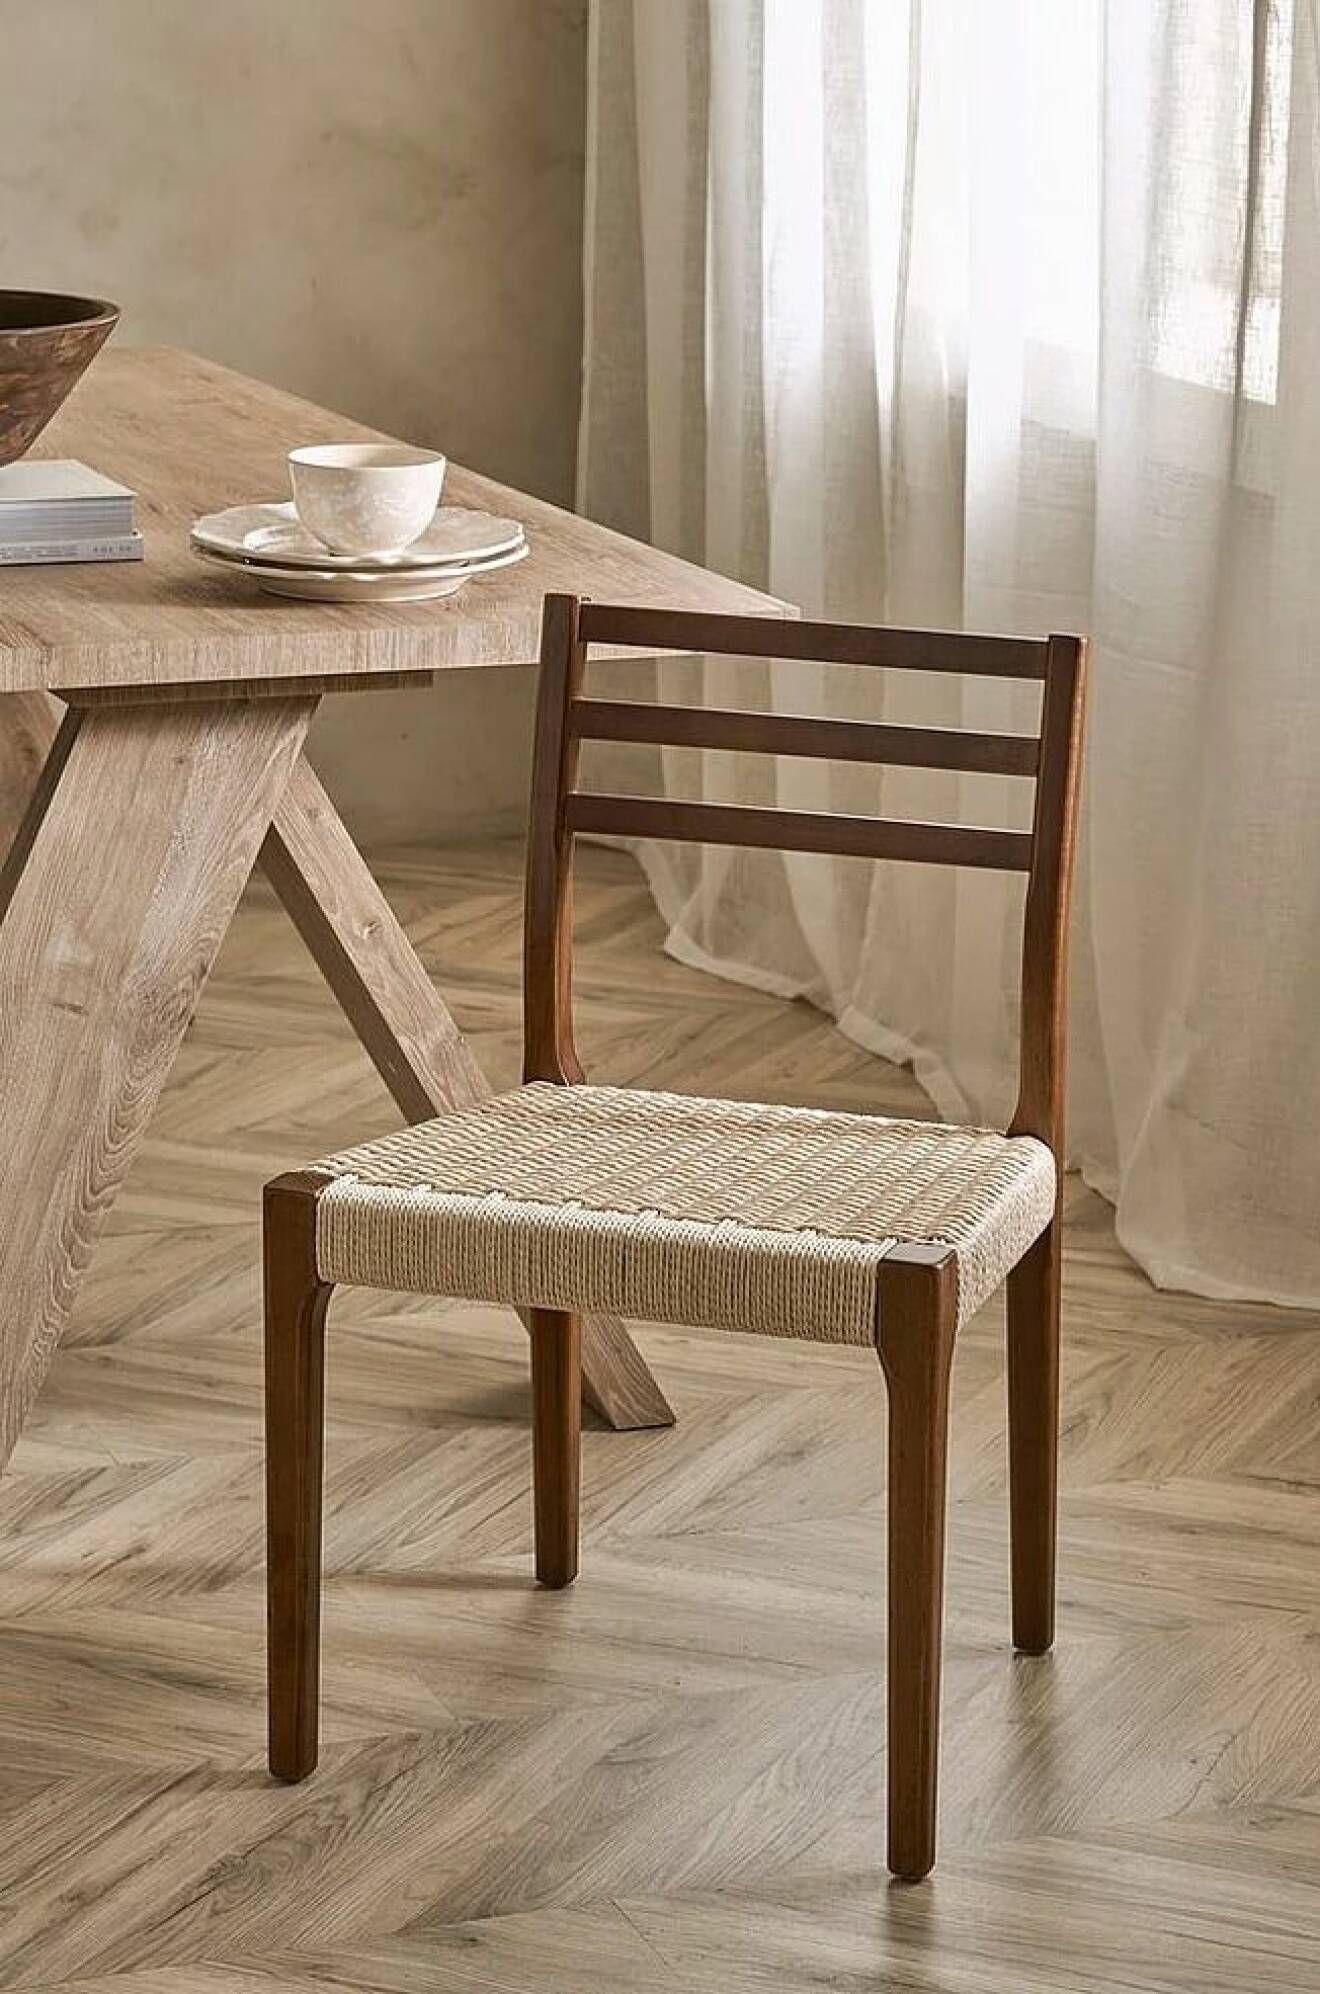 brun stol i trä från ellos med flätad sits